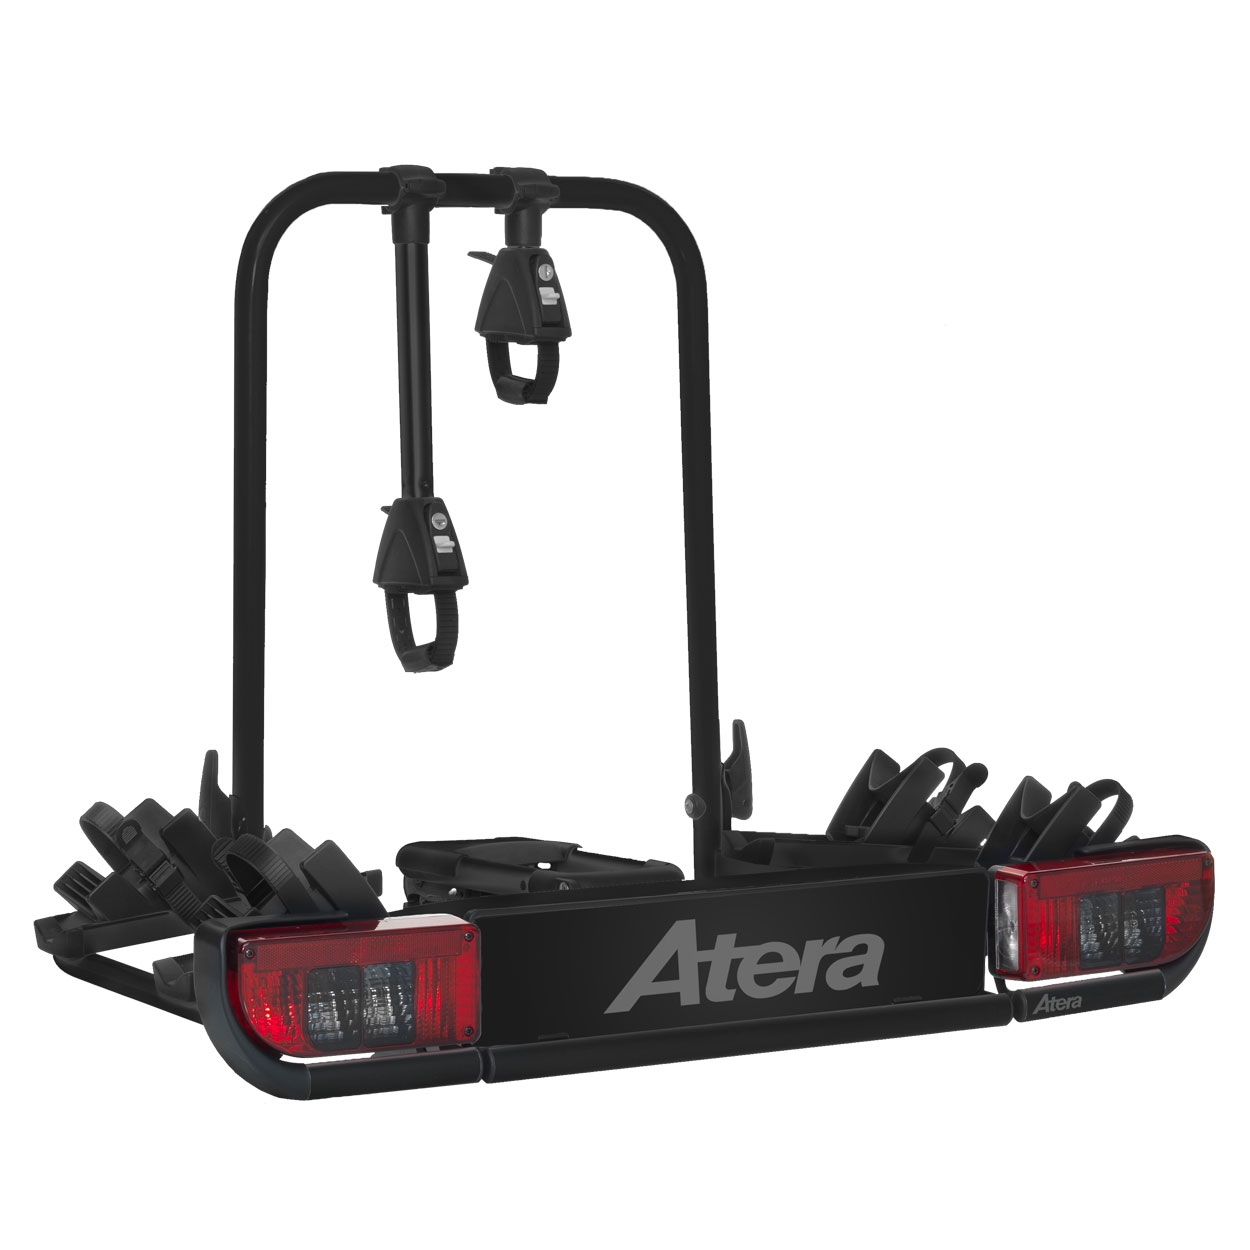 ATERA STRADA e-BIKE fuer 2 Elektroraeder 022698 Black Edition- Fahrradtraeger fuer die Anhaengerkupplung von ATERA aus dem Allgaeu